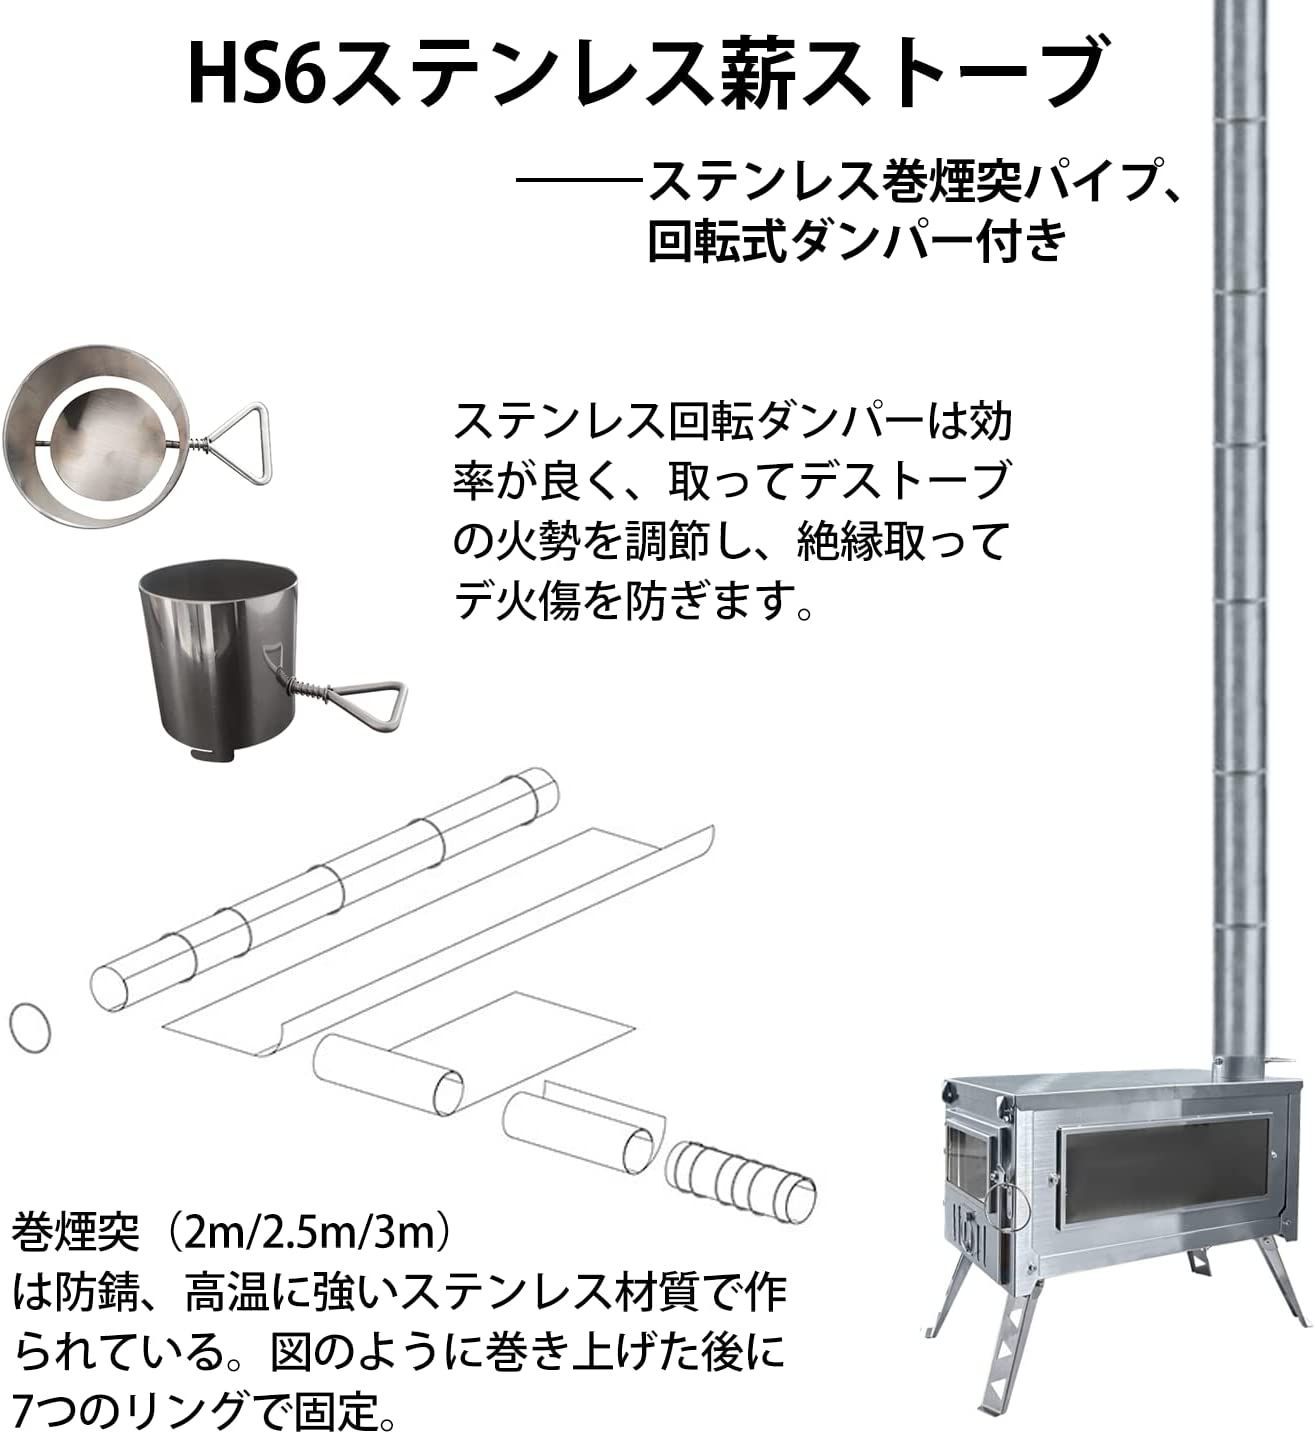 D&R HS6【二次燃焼ステンレス304製薪ストーブ】組み立て可能 煙突付き-